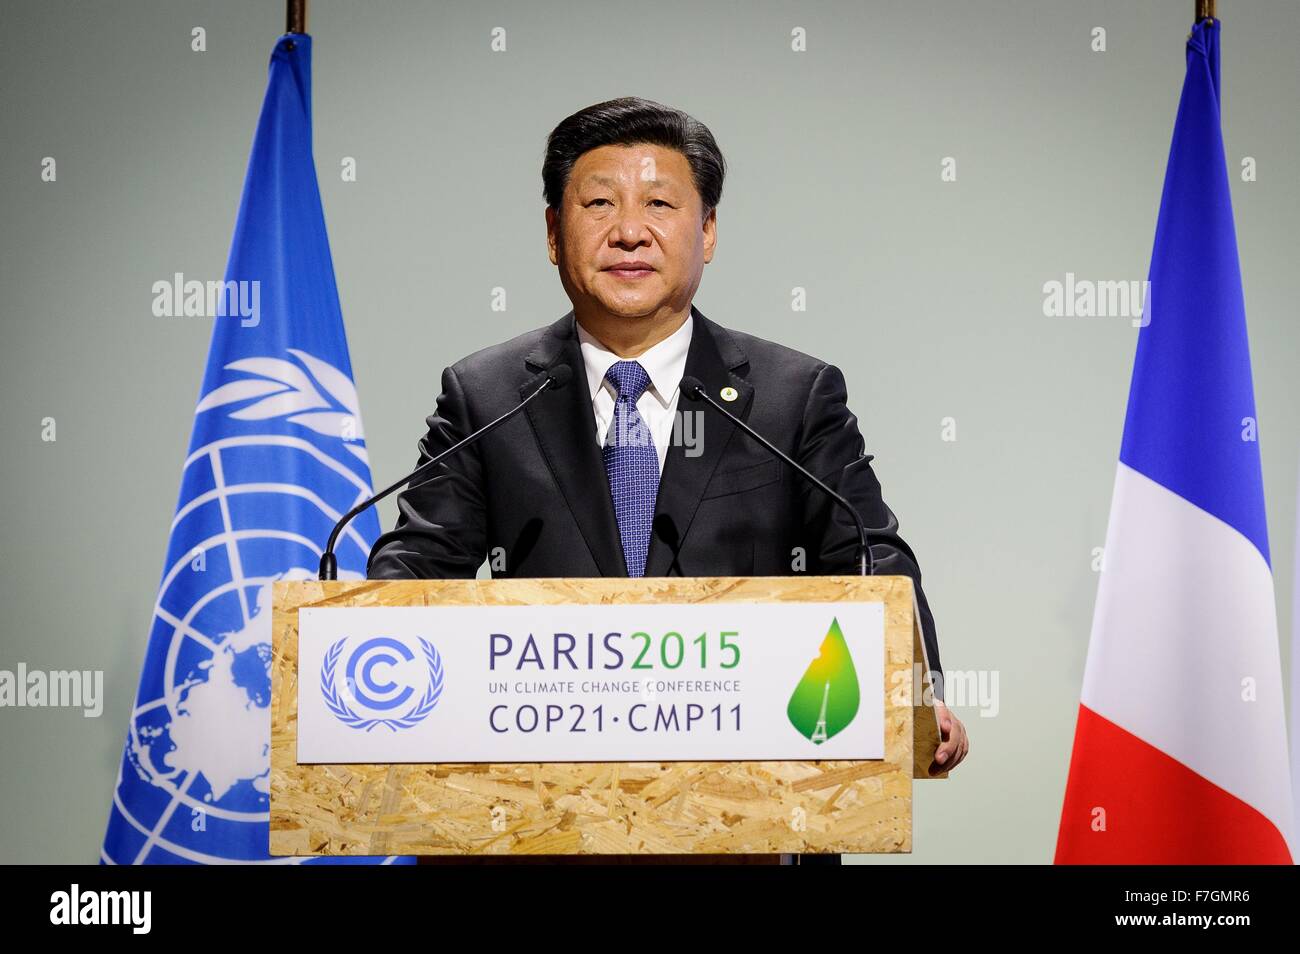 Le Bourget, France. 30 novembre, 2015. Le président chinois Xi Jinping traite de la session plénière de la COP21, Conférence des Nations Unies sur les changements climatiques 30 novembre 2015 en dehors de Paris Le Bourget, France. Banque D'Images